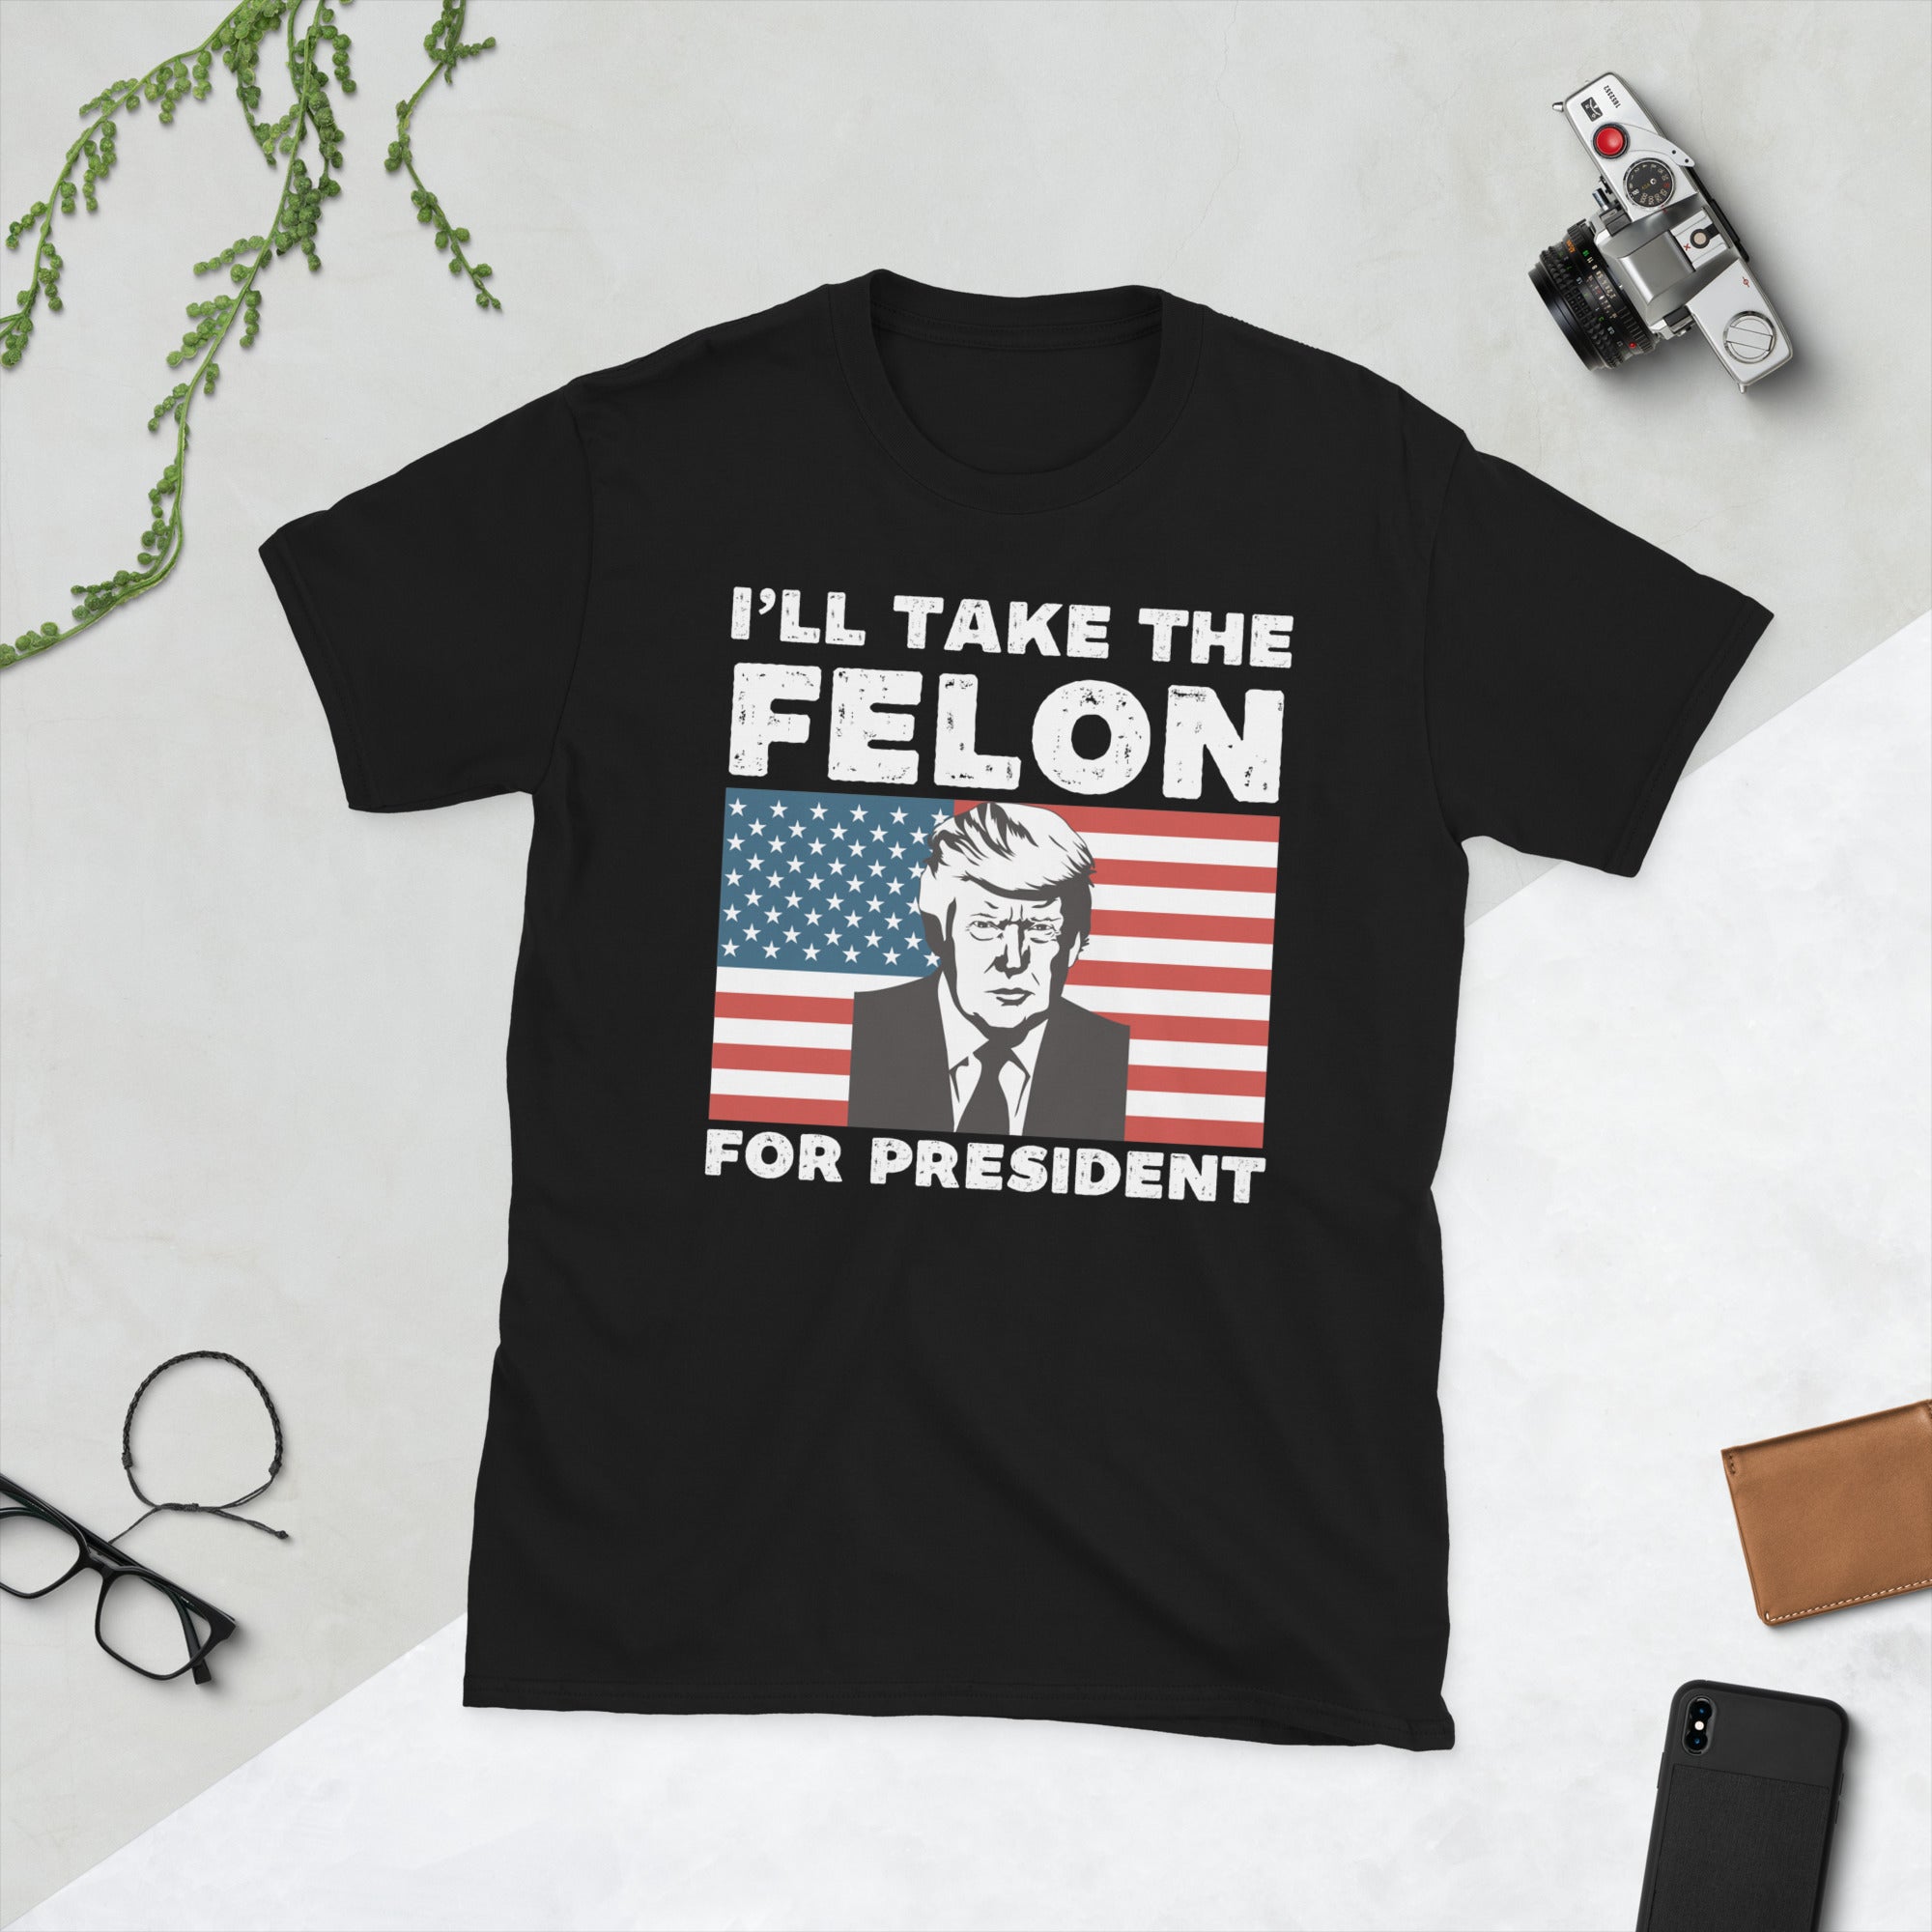 Vote Felon 2024, Trump 2024 Shirt, Republikaner Geschenke, Wahlshirt, Politisches T-Shirt, Felon For President, Konservatives Shirt